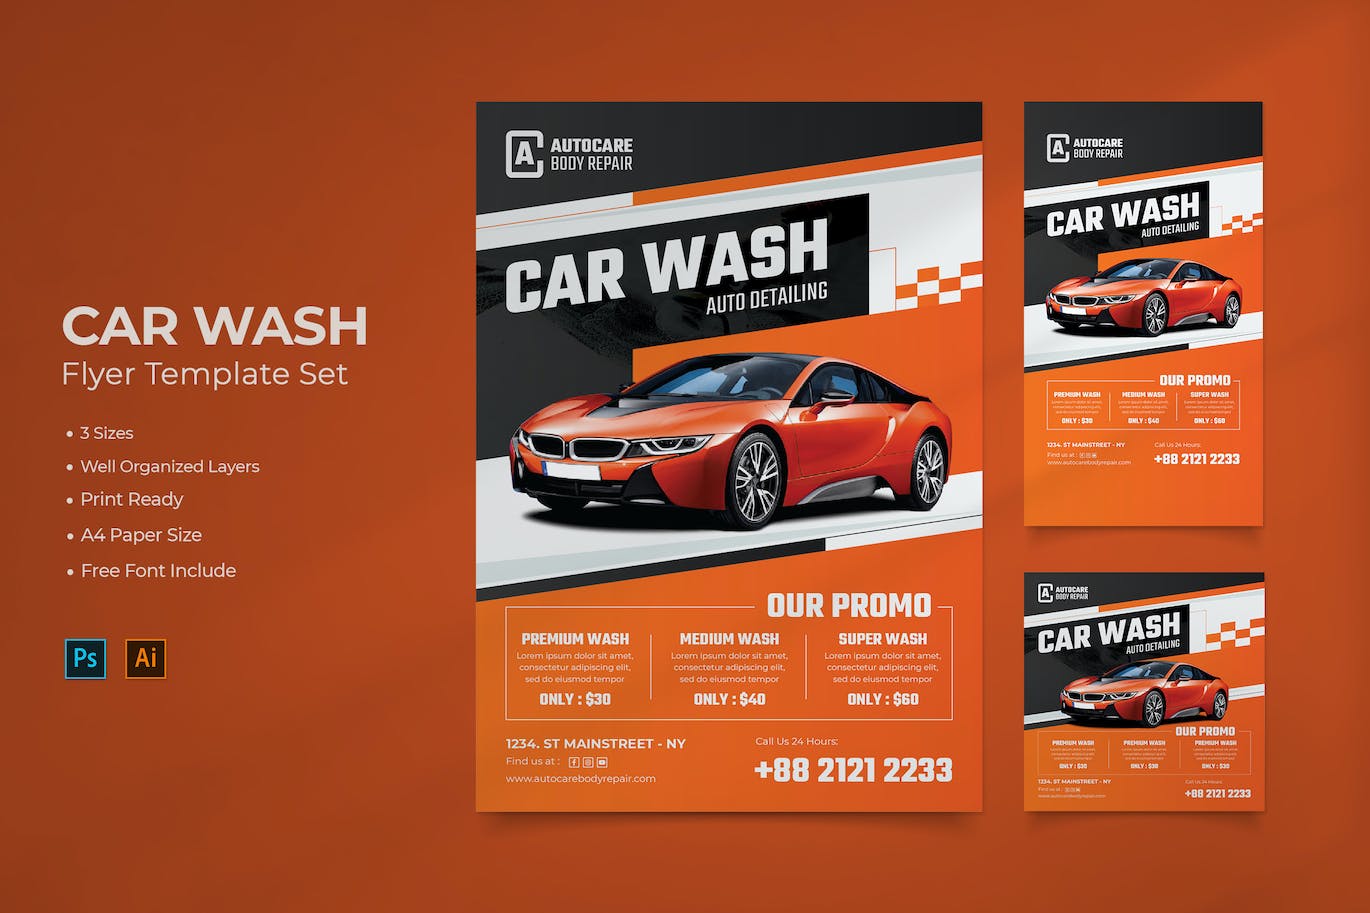 洗车服务海报模板 Car Wash Flyer Template Set 设计素材 第1张